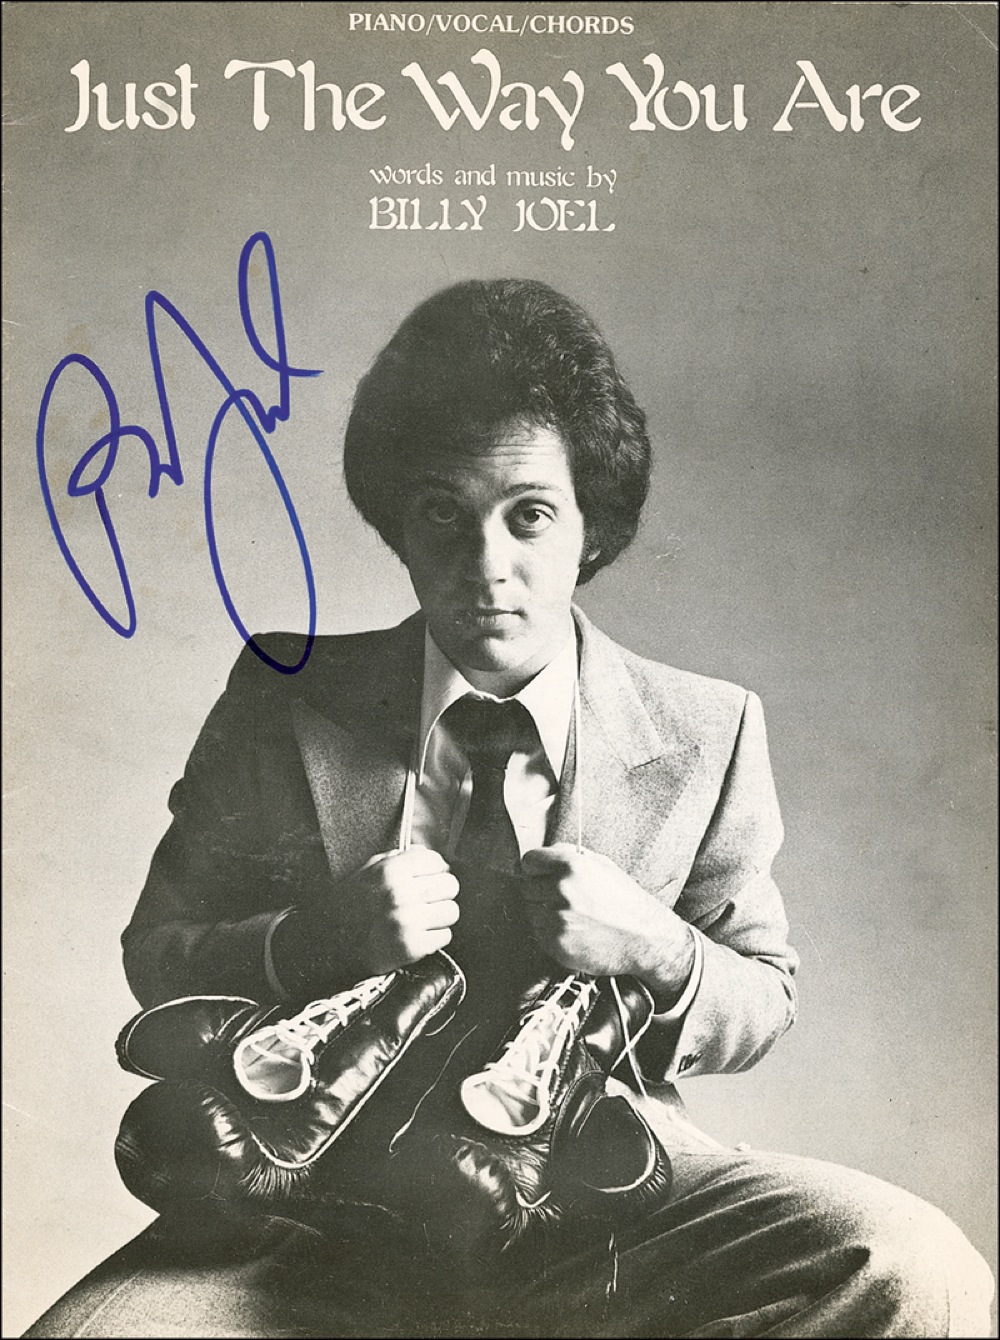 Lot #819 Billy Joel